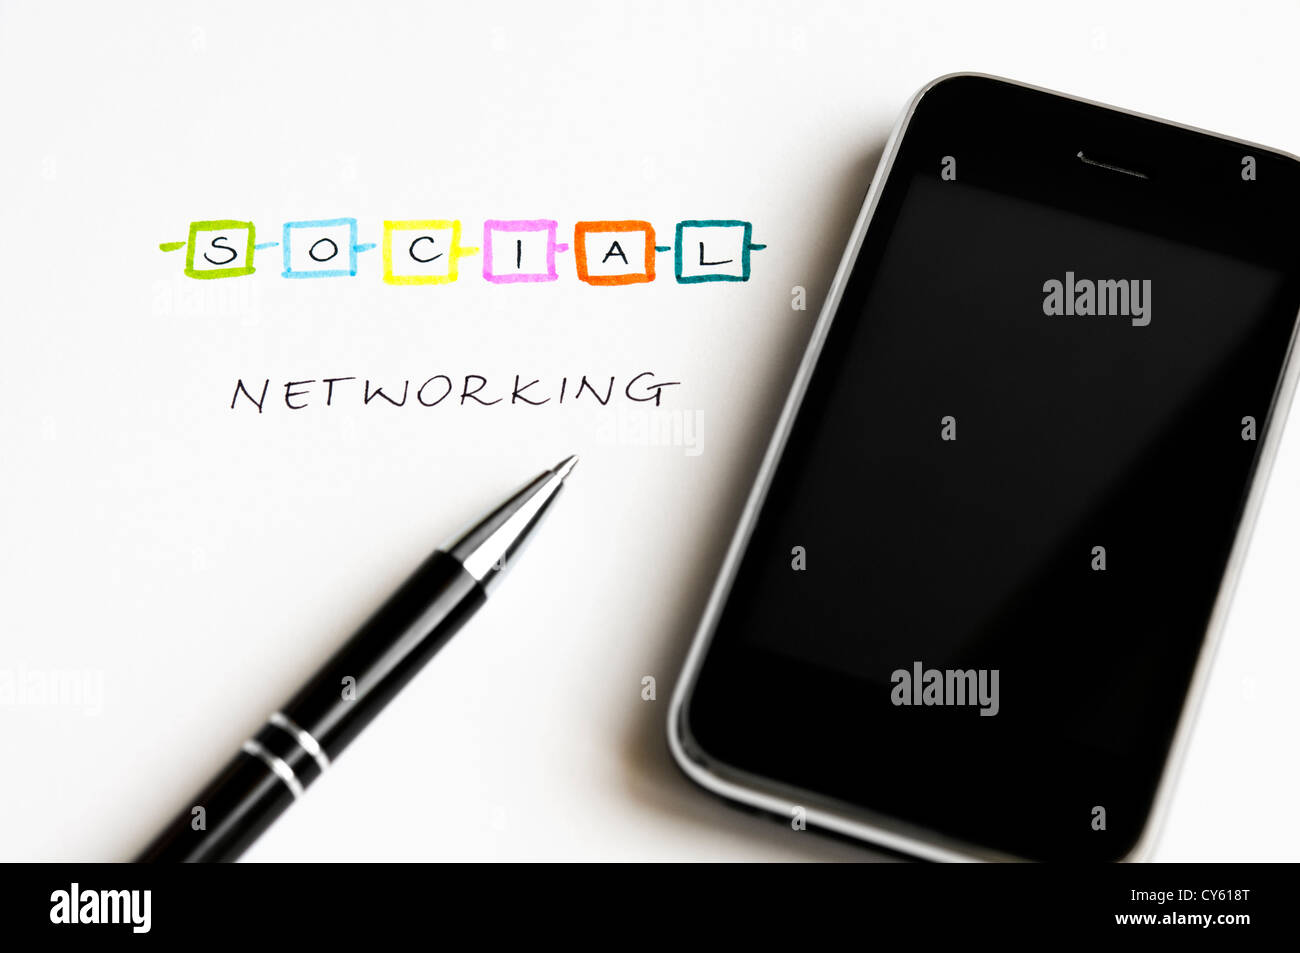 Concept de réseau social avec des lettres colorées, écran tactile moderne téléphone mobile et stylo à bille Banque D'Images